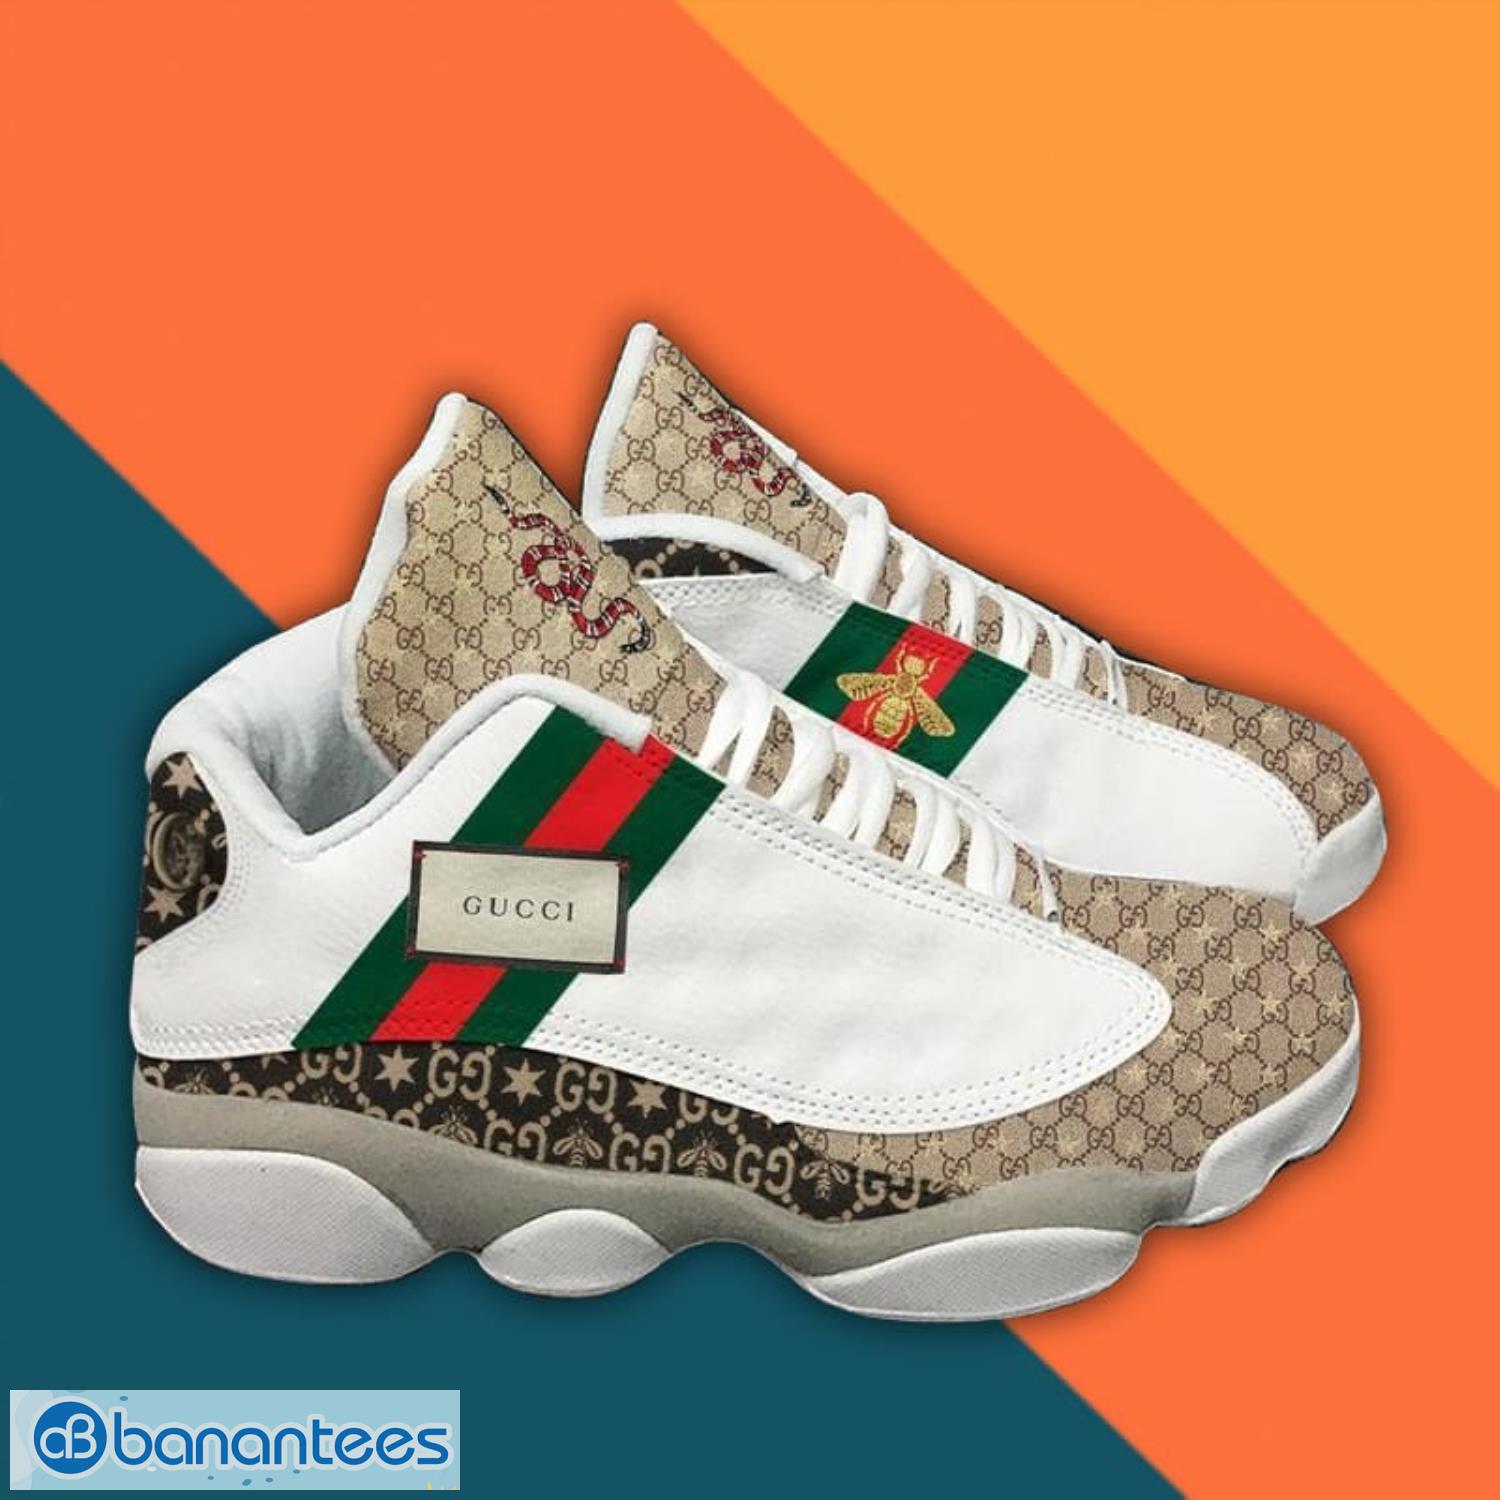 Gucci Bee And Tiger Air Jordan 13 Shoes New - Banantees